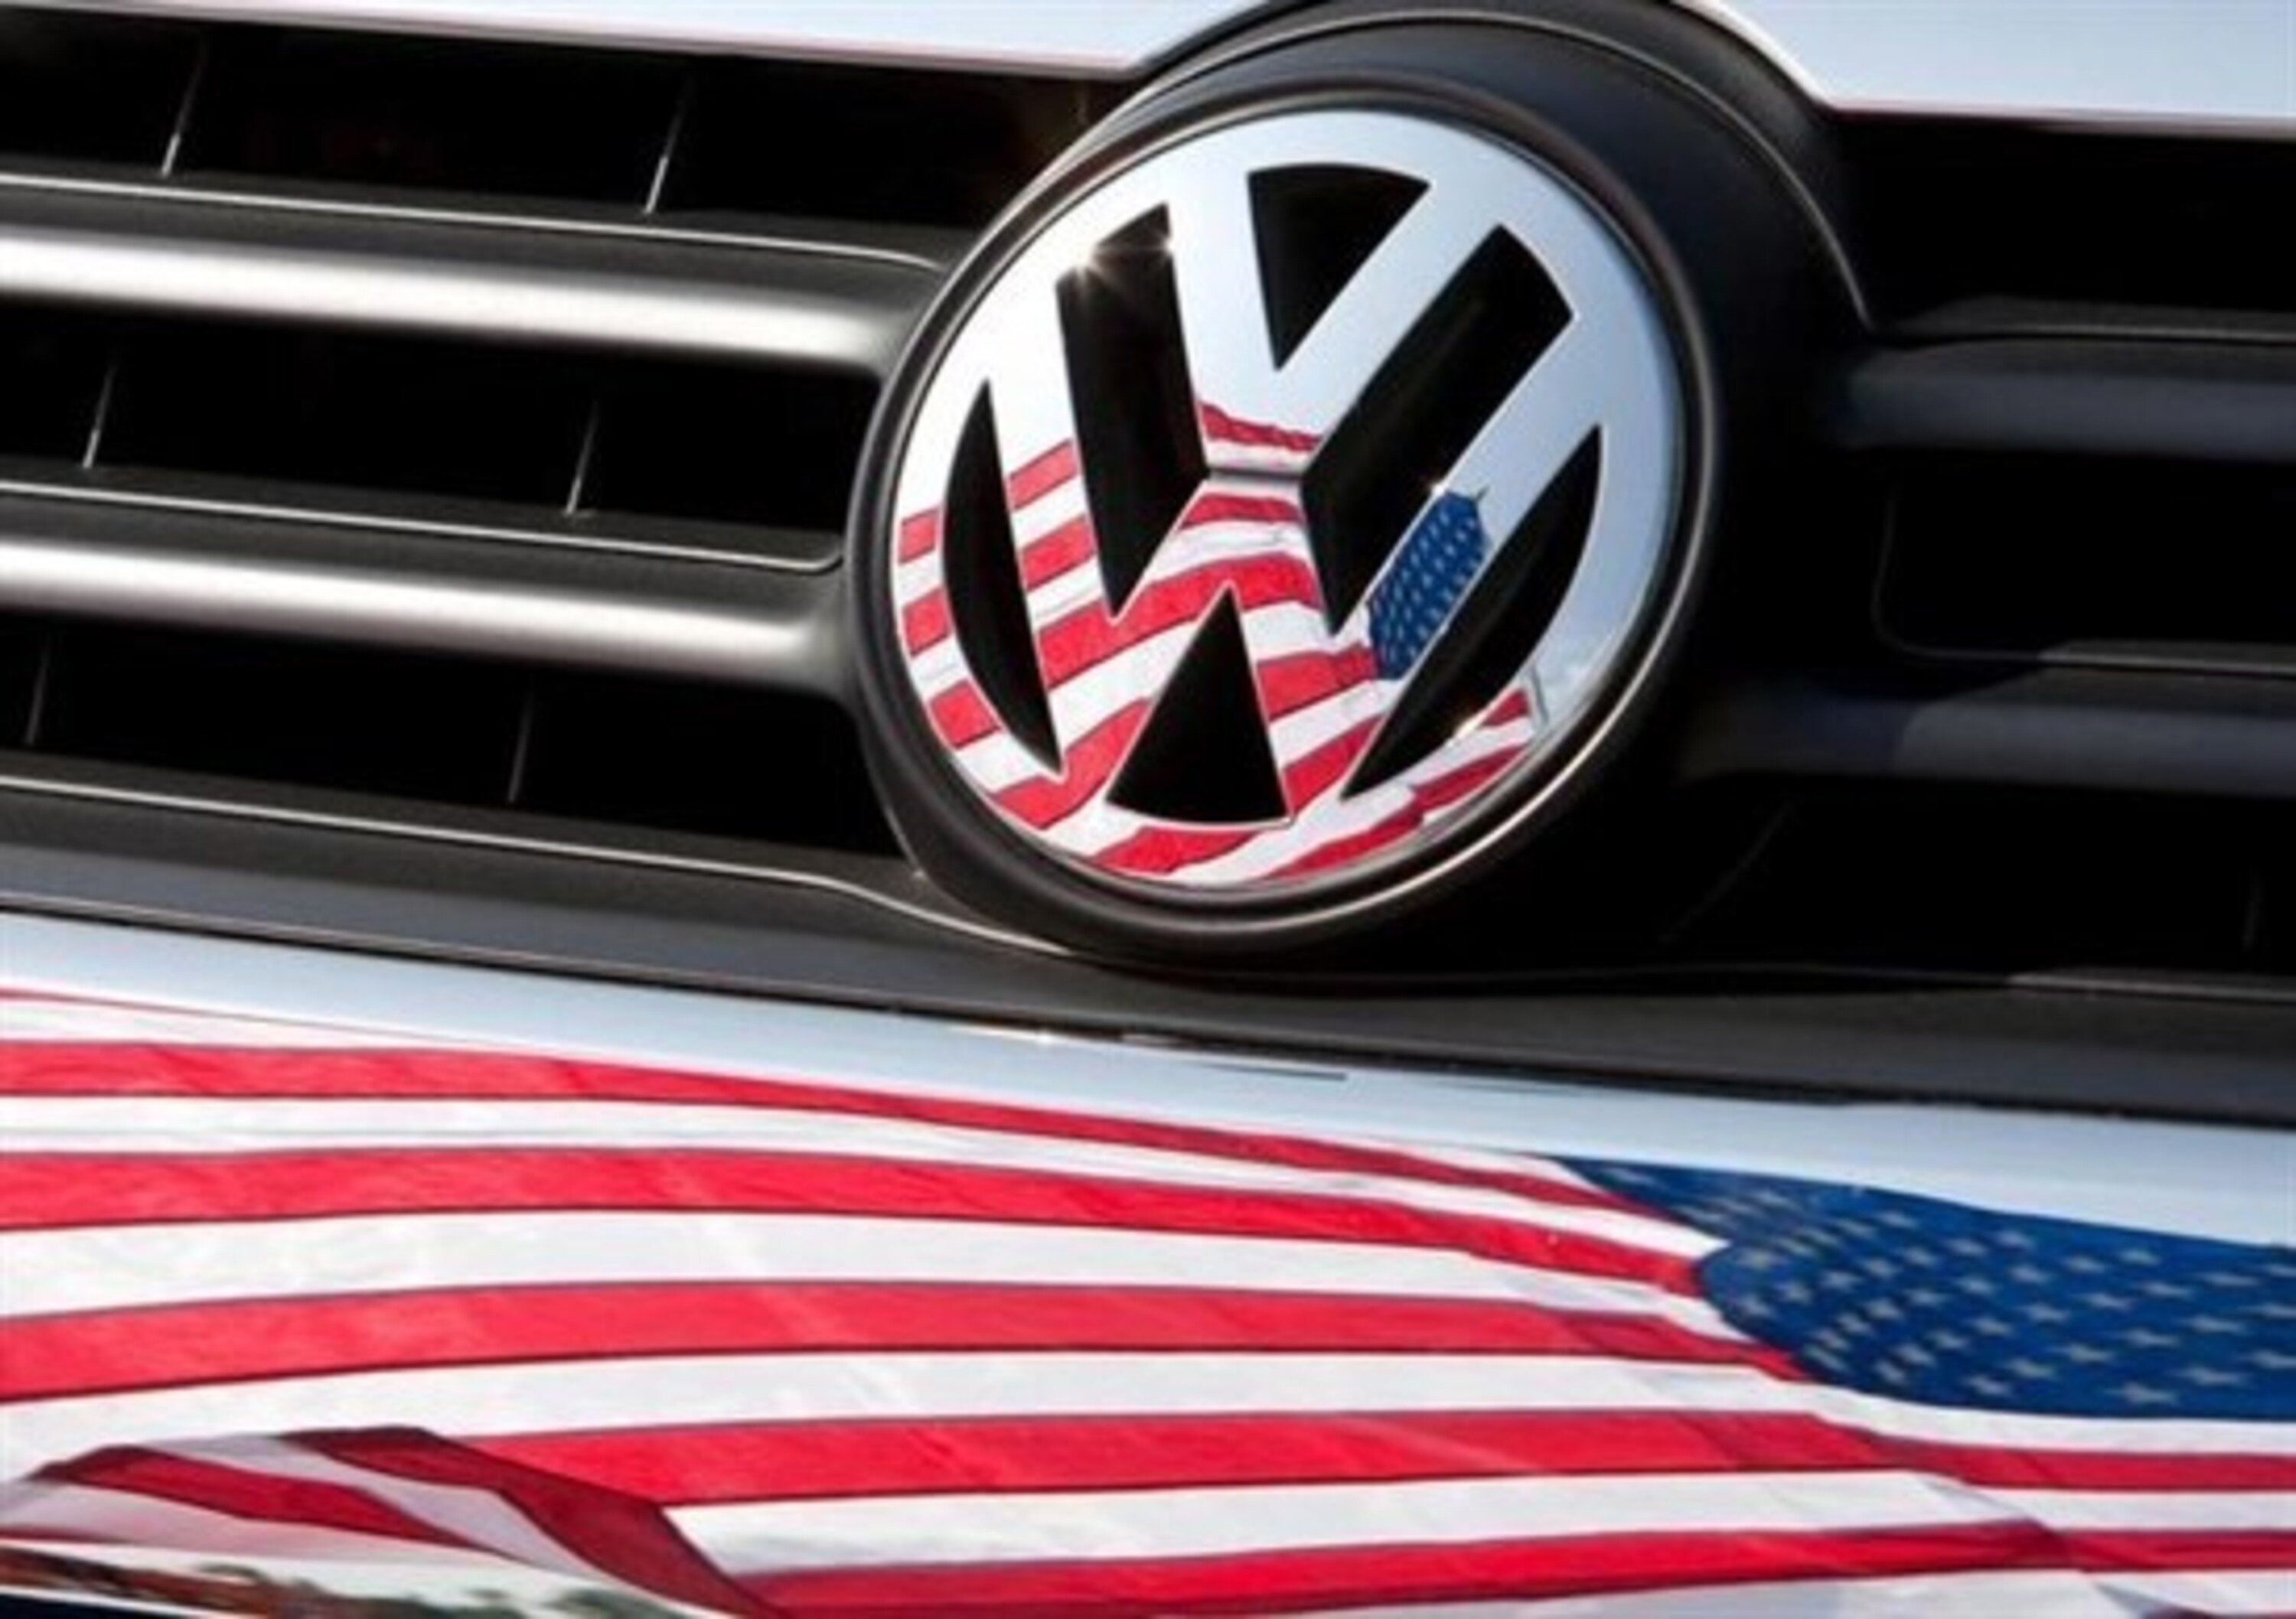 VW, approvato patteggiamento da 14,7 miliardi di dollari con consumatori negli States